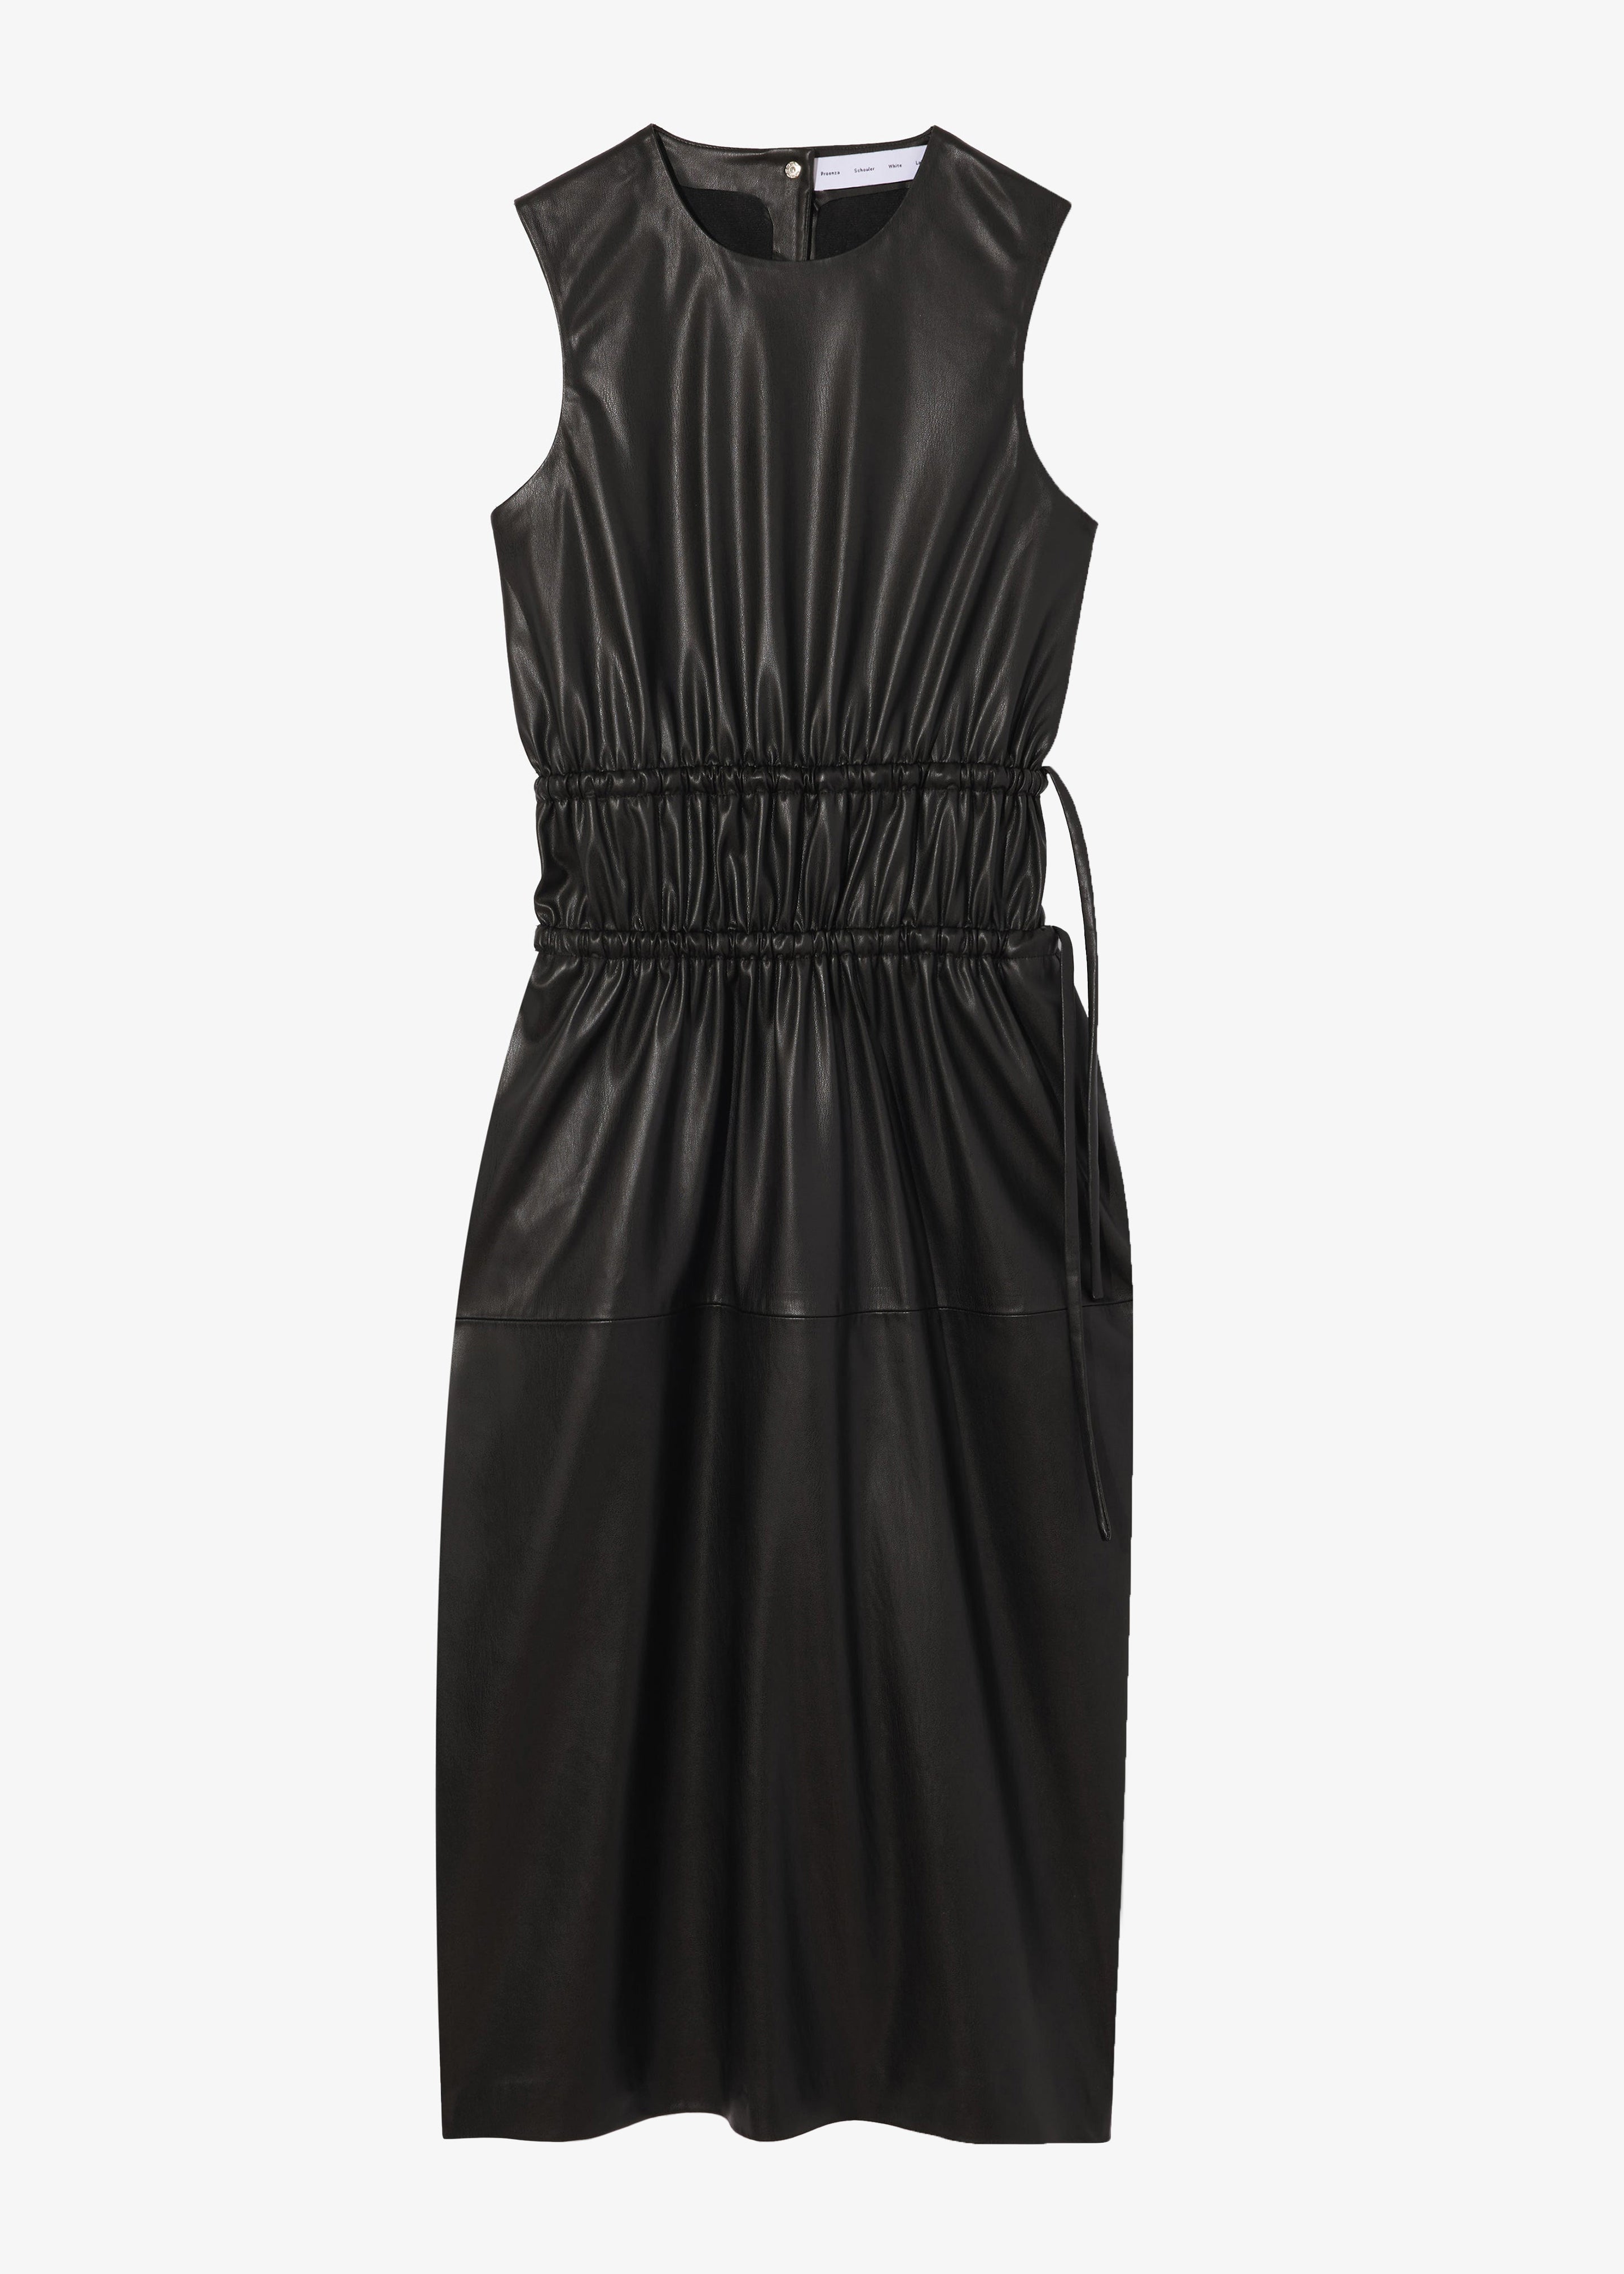 Proenza Schouler White Label Faux Leather Drawstring Dress - Black - 7